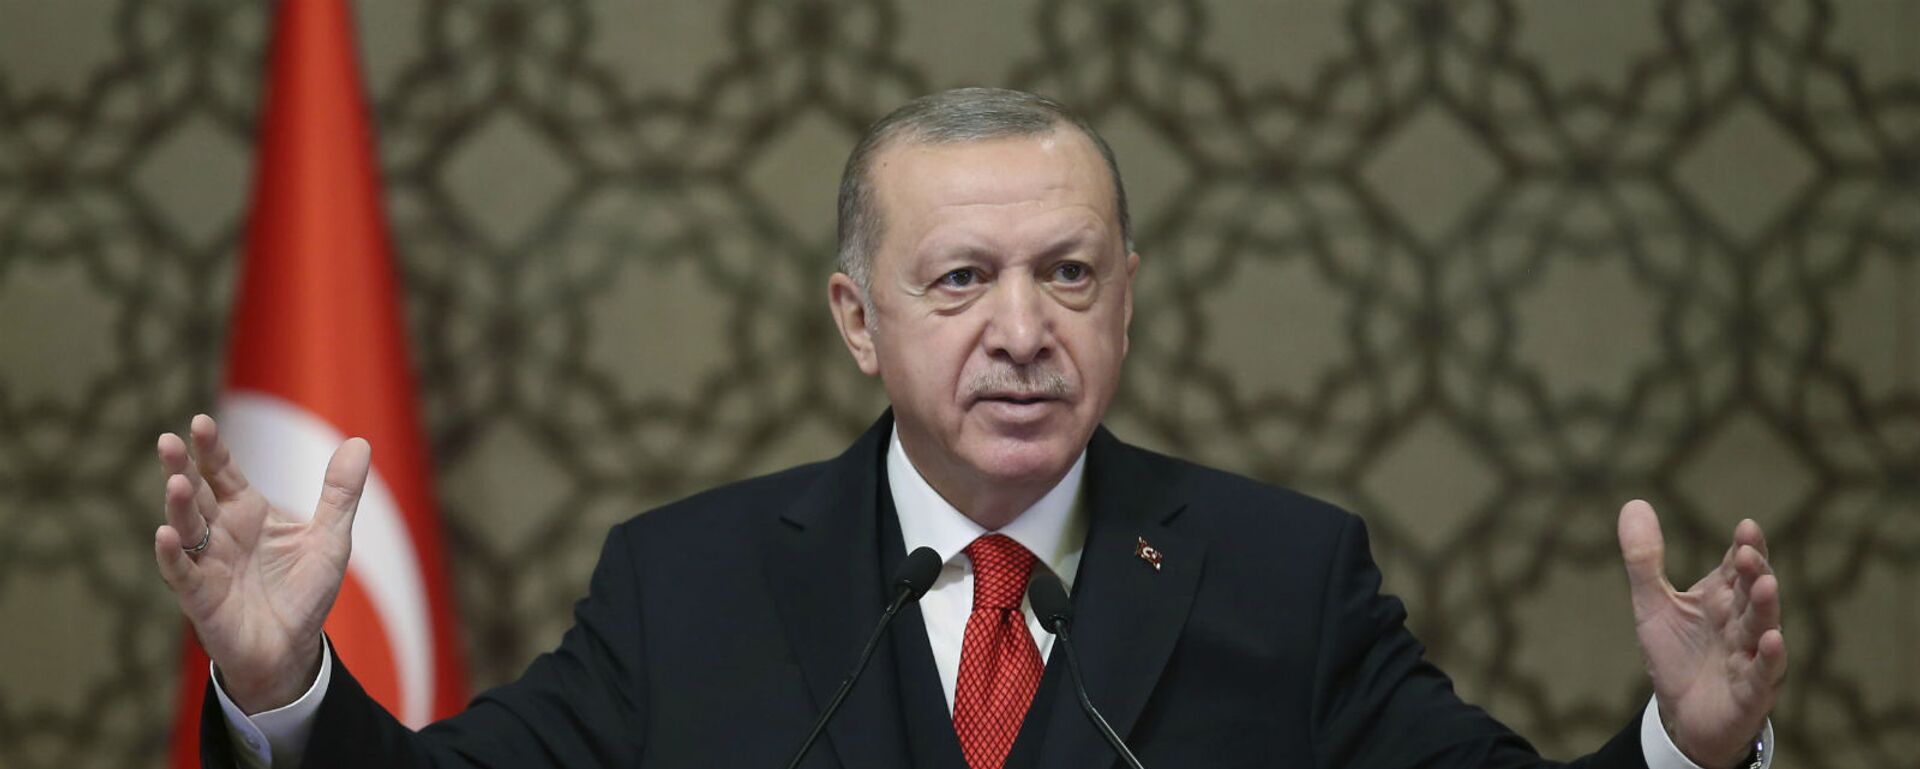 Президент Турции Реджеп Тайип Эрдоган выступает на встрече послов Турции (9 ноября 2020). Анкара - Sputnik Армения, 1920, 17.05.2021